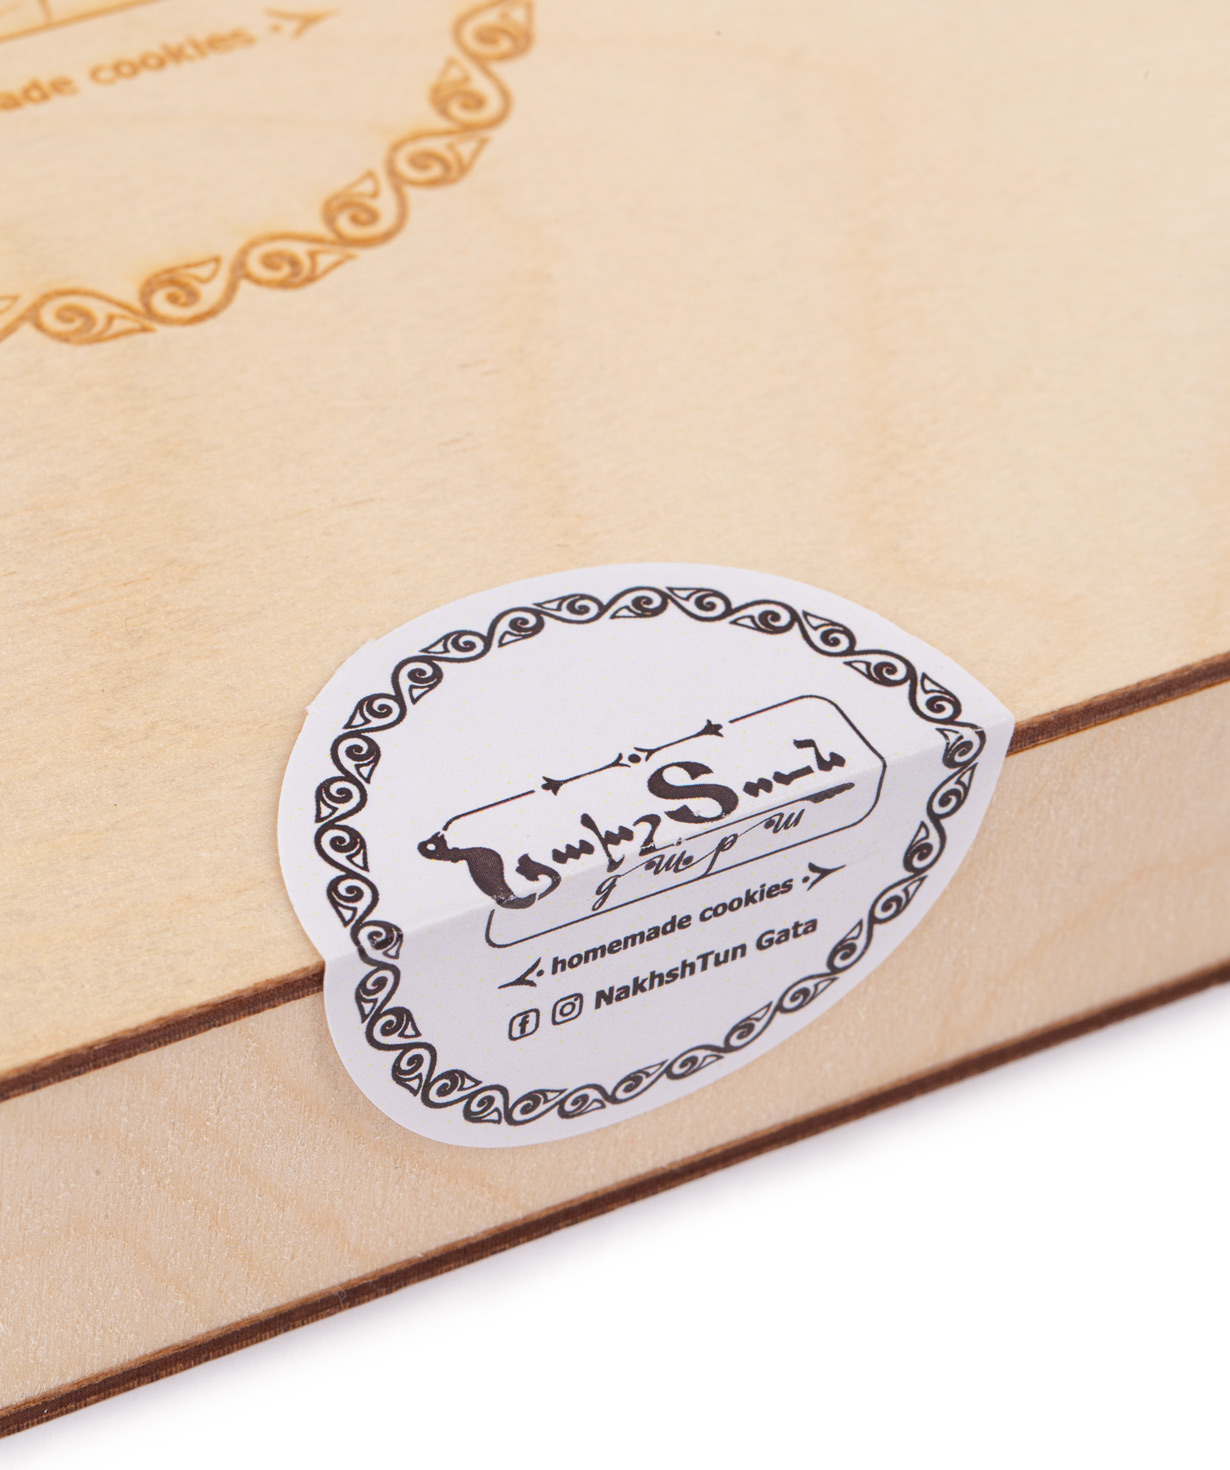 Gata `NakhshTun Gata` Erzurum, in a wooden box